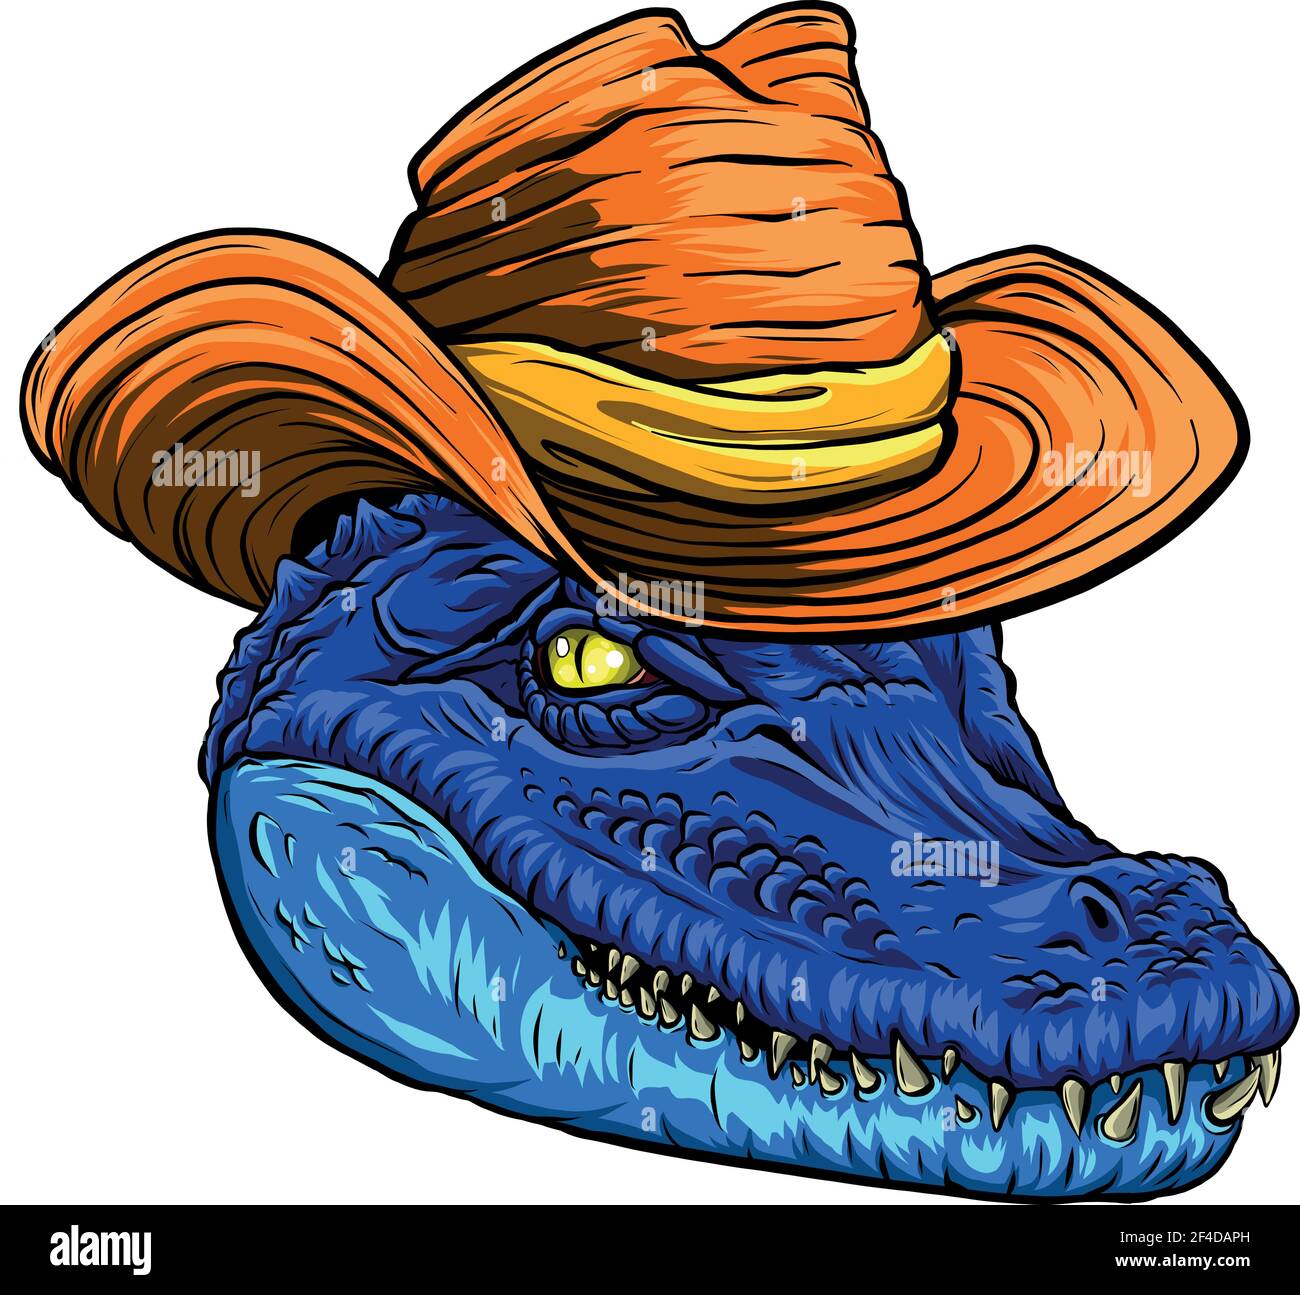 Illustrazione vettoriale, una testa di alligatore blu feroce con cappello Illustrazione Vettoriale